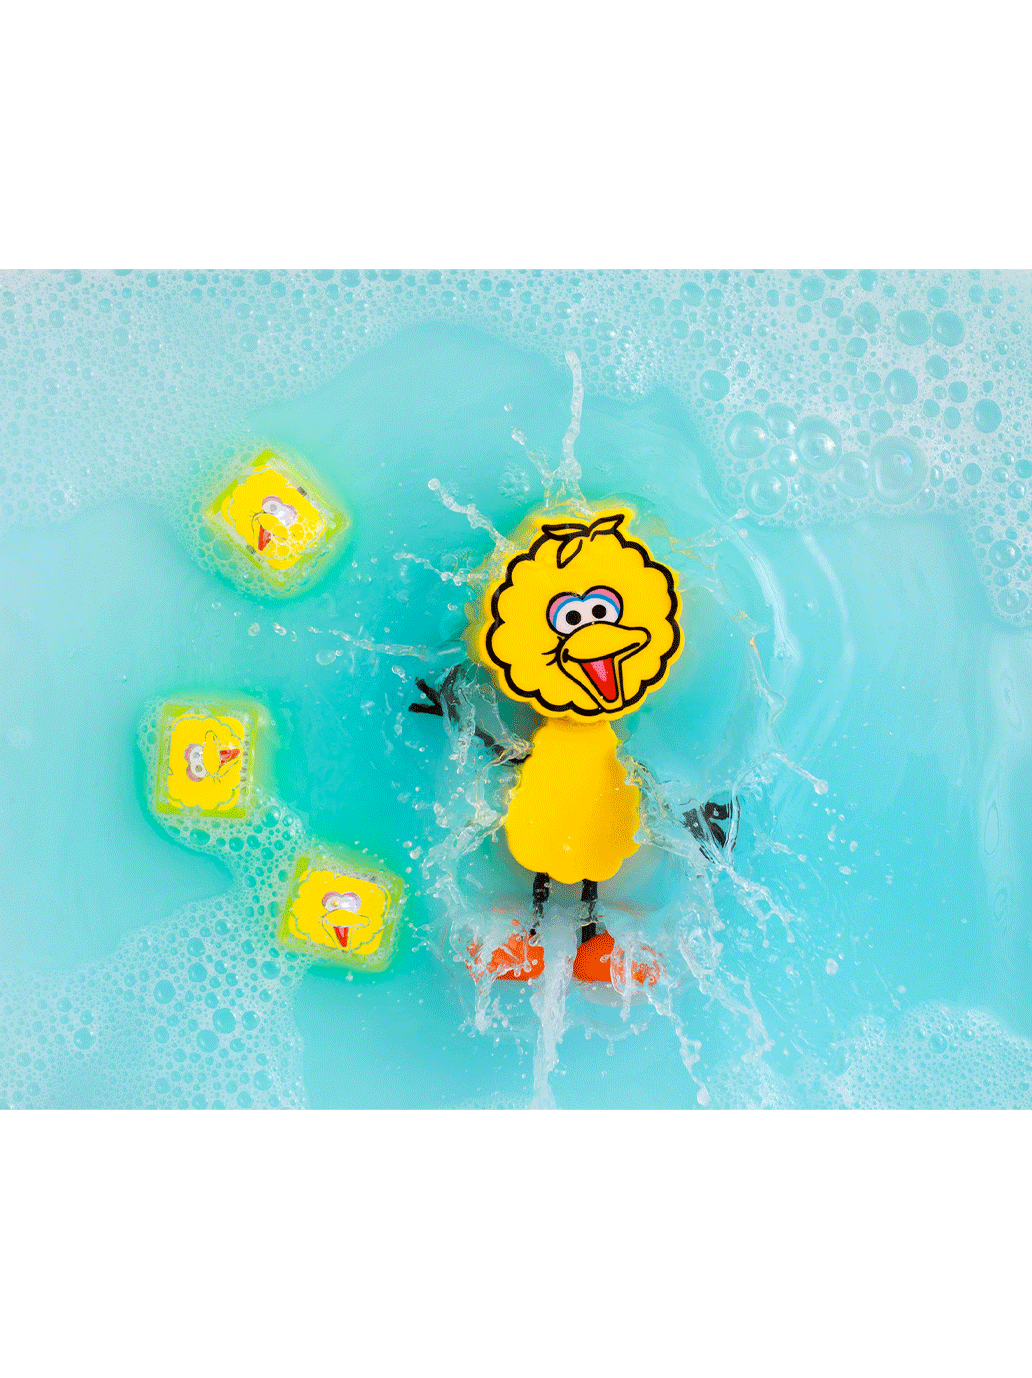 Cubi sensoriali che brillano nell'acqua con una figura di Sesame Street